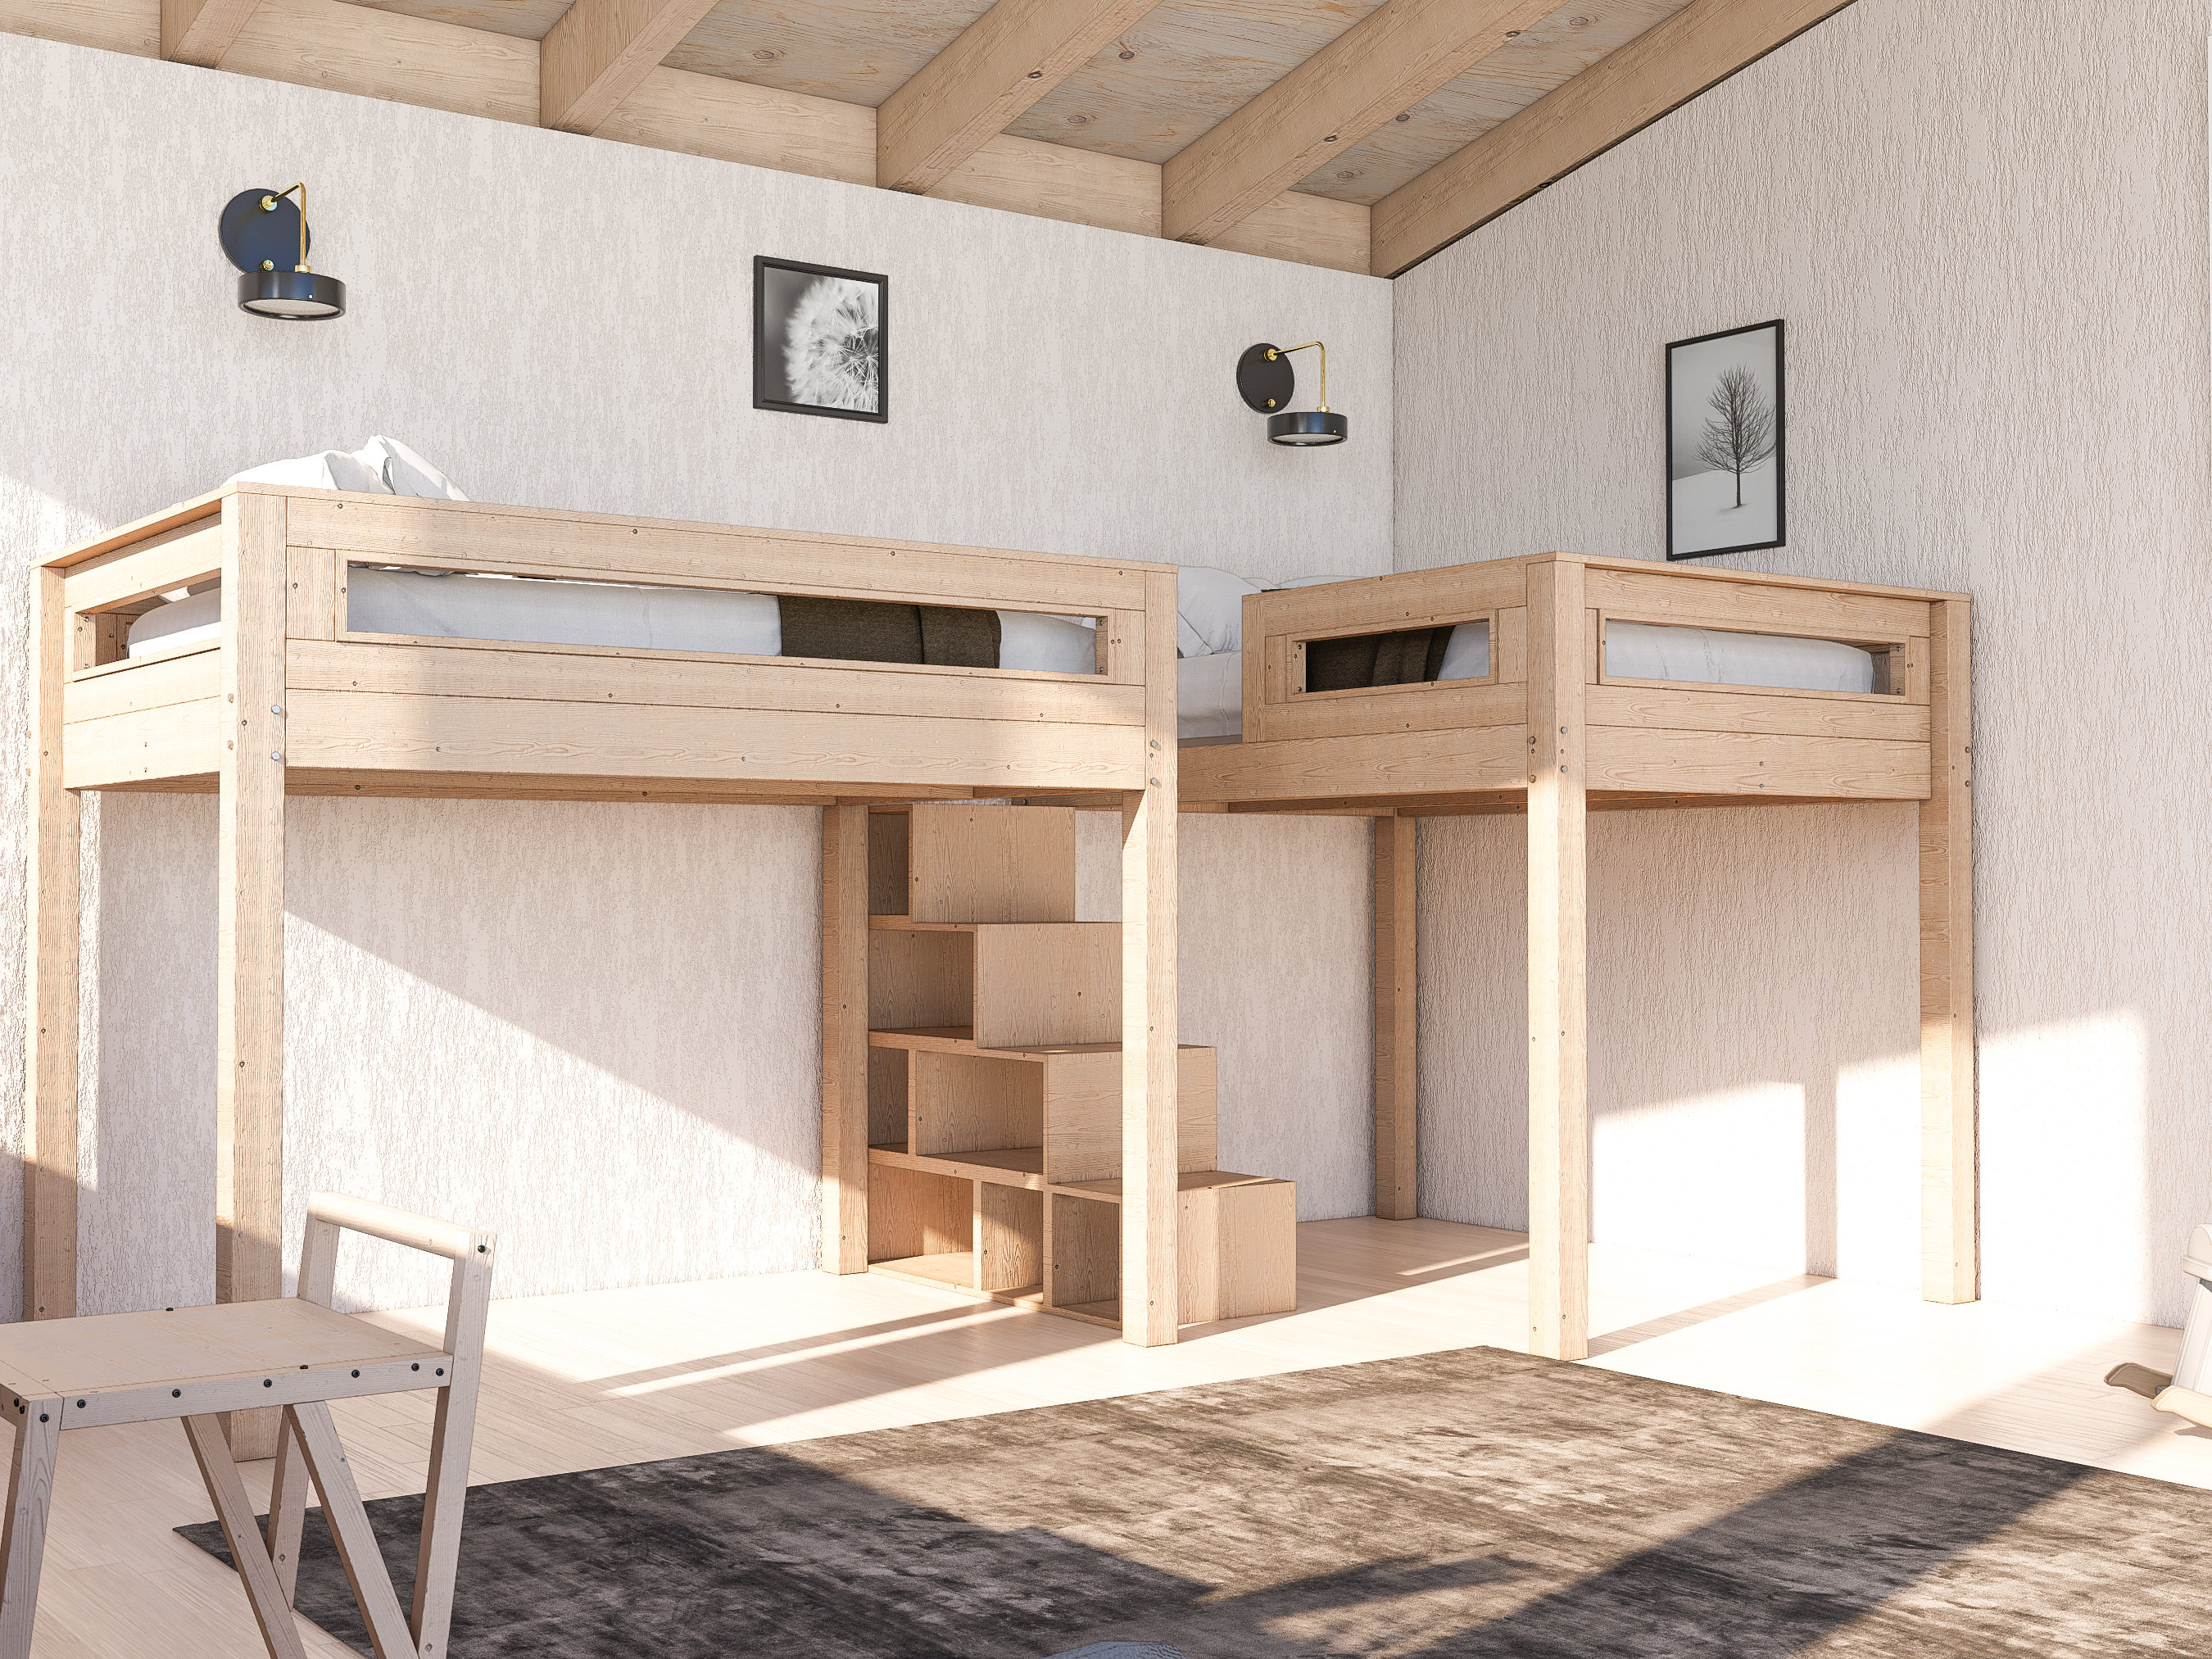 Cama tipo loft multiusos con escritorio y cajones debajo de la cama, cama  alta de madera tamaño individual con estantes de almacenamiento y  escaleras